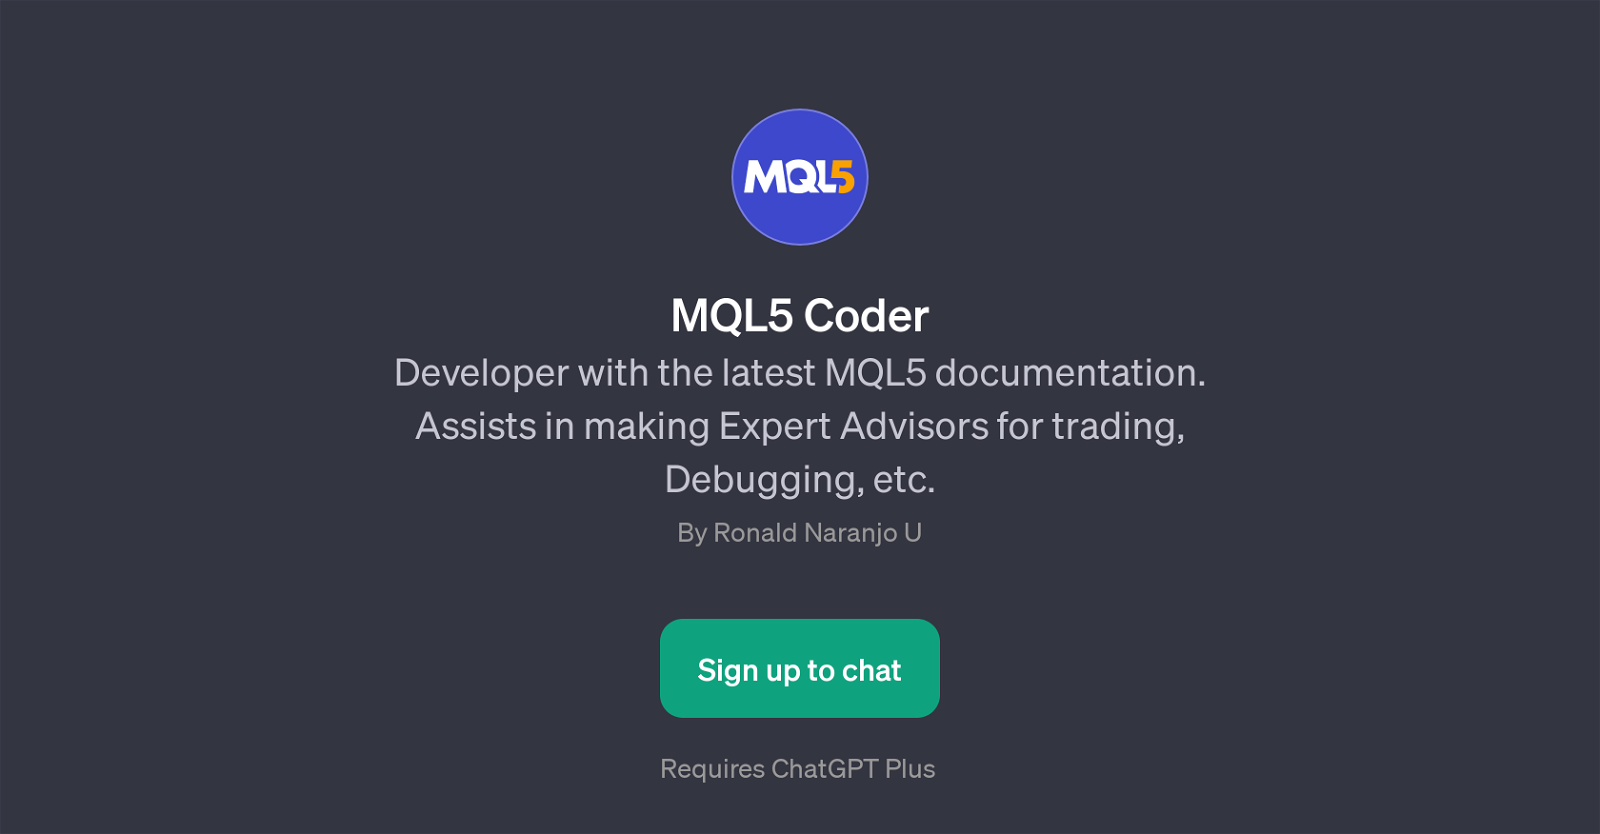 MQL5 Coder website